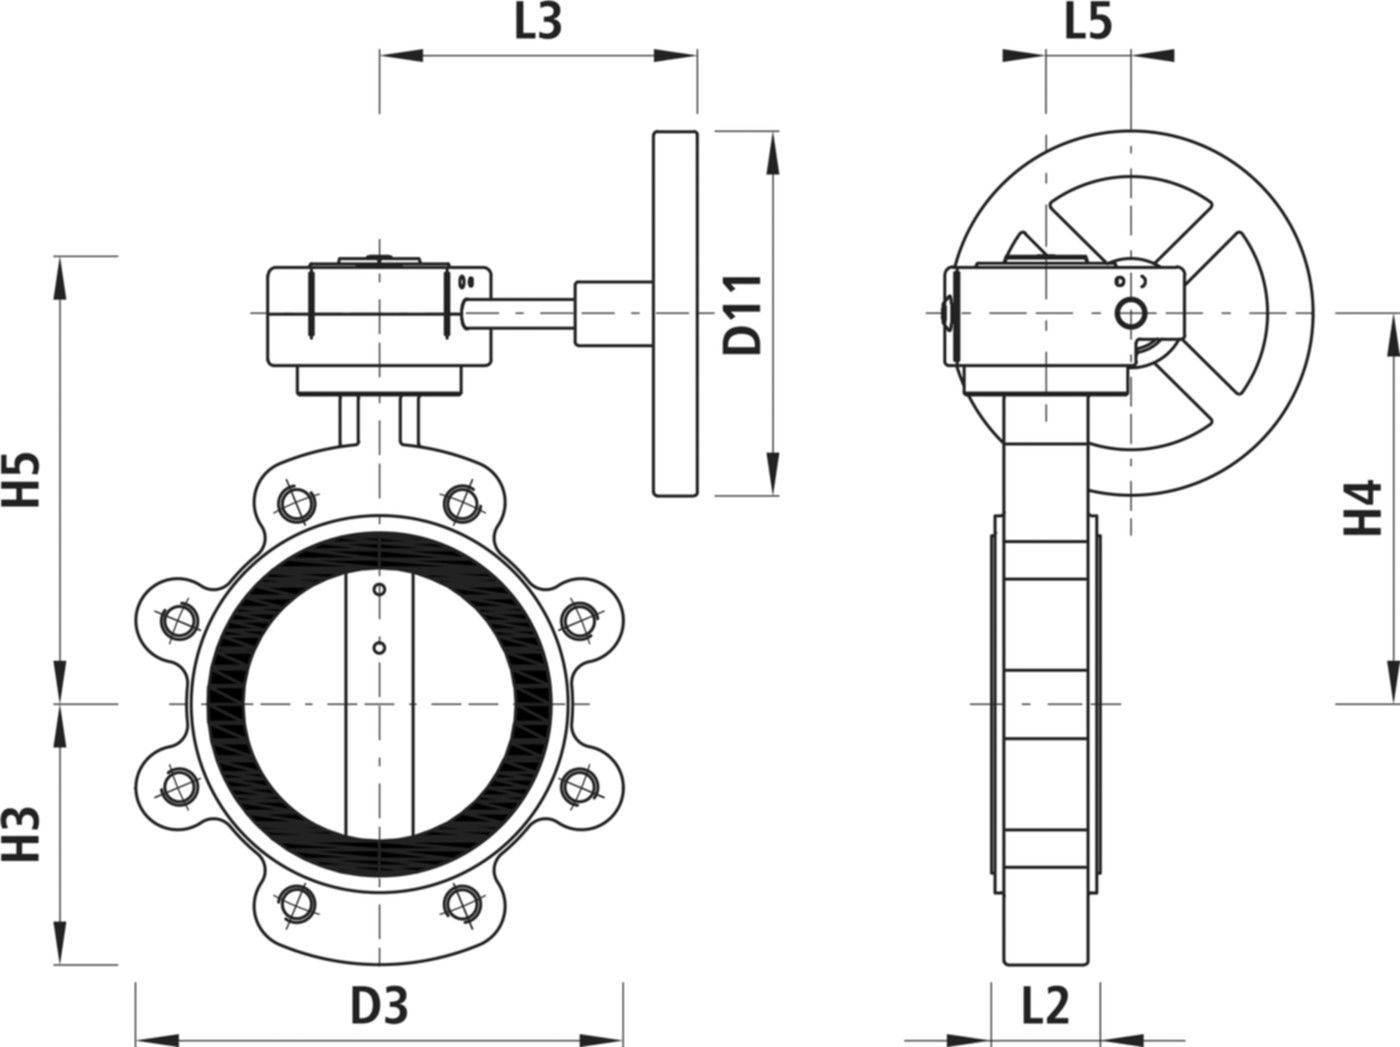 Absperrklappe mit Getriebe Typ LI 9943 DN 200 PN 10 - Hawle Absperrklappen